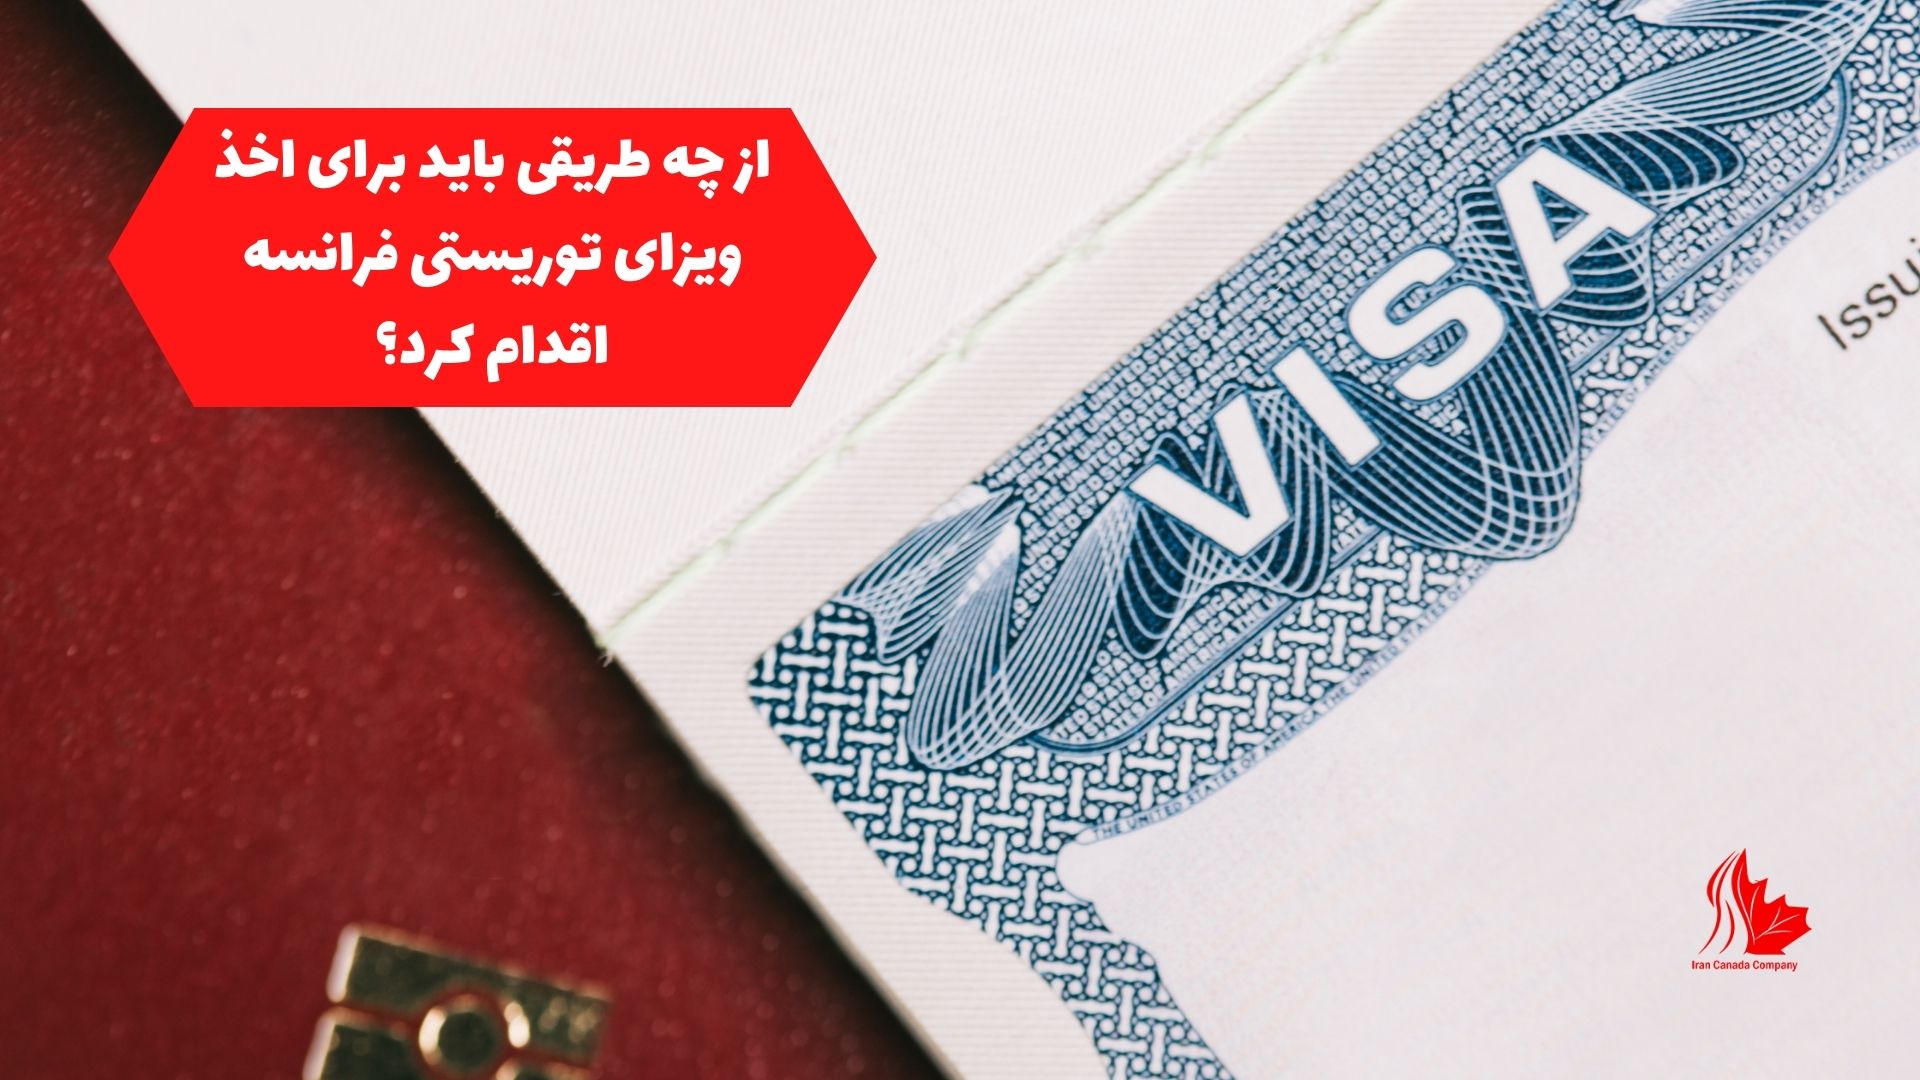 از چه طریقی باید برای اخذ ویزای توریستی فرانسه اقدام کرد؟